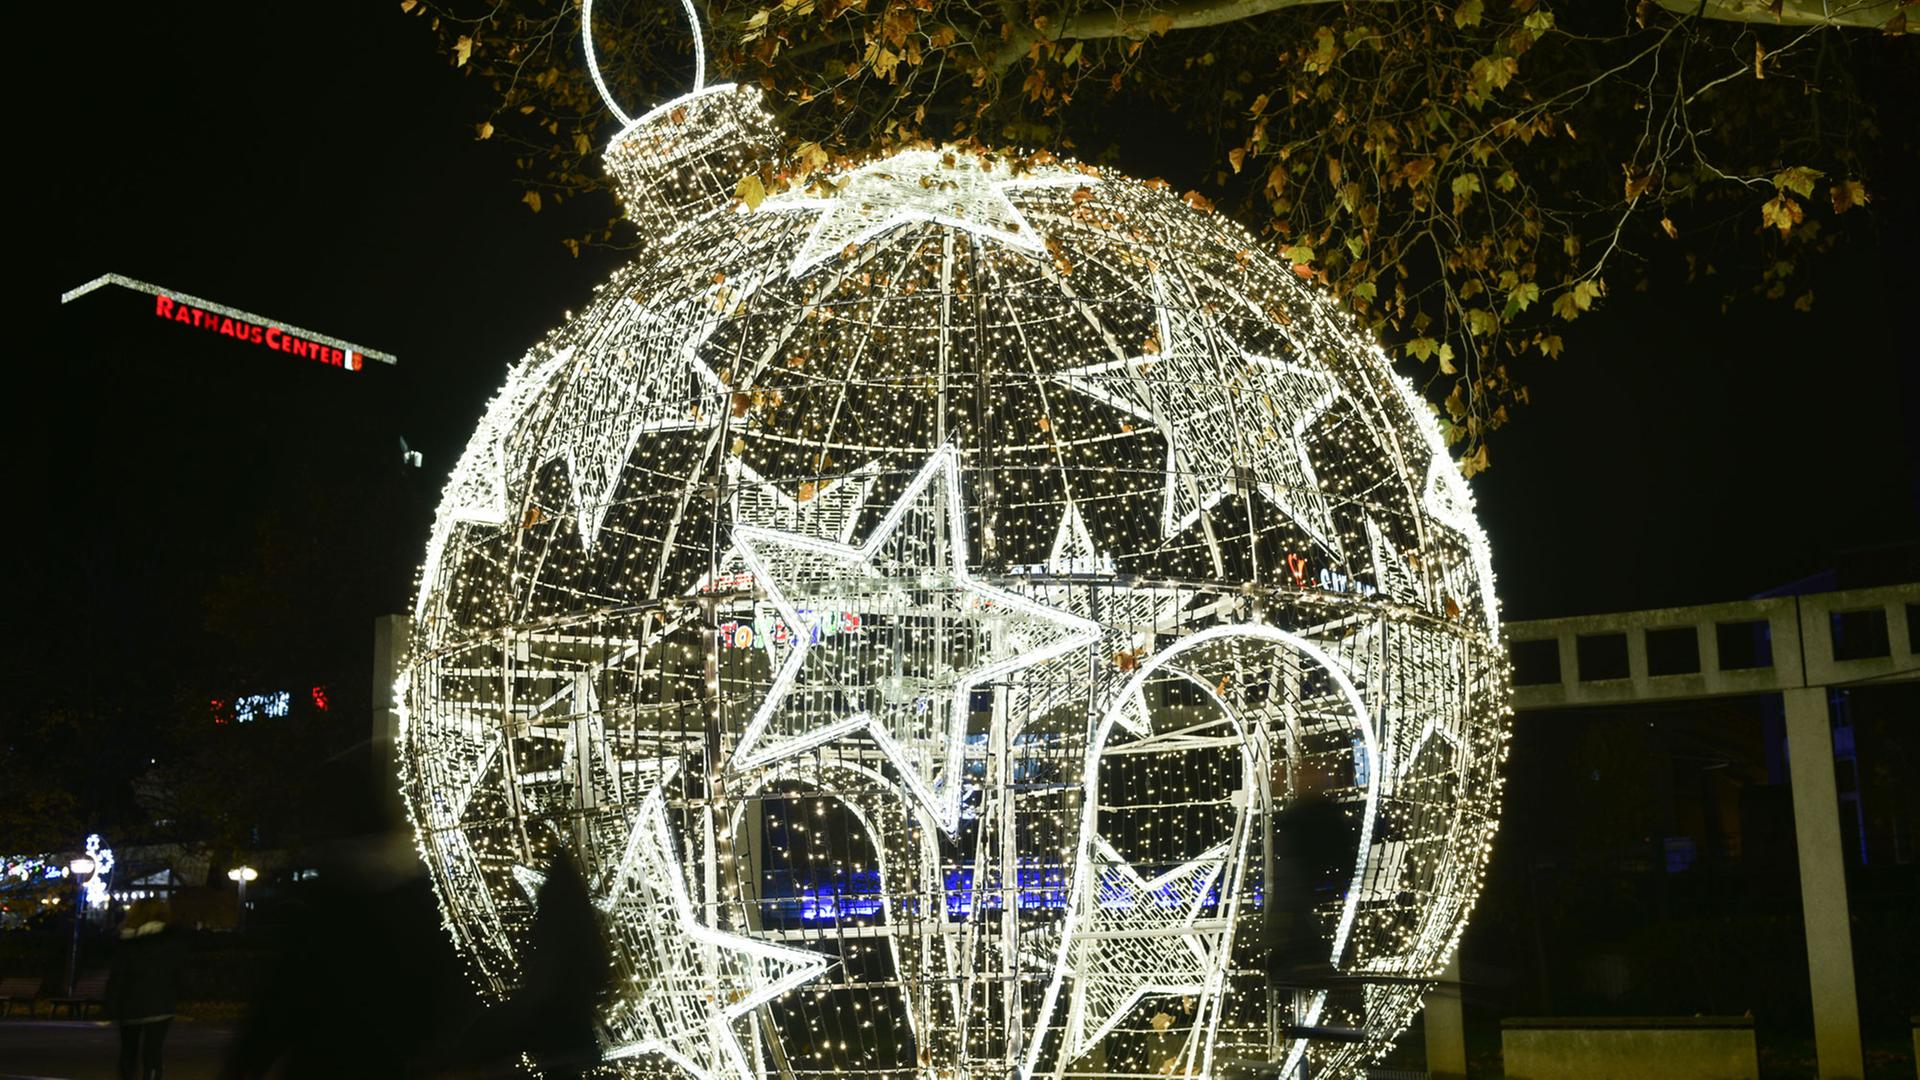 Besucher laufen am 24.11.2014 in Ludwigshafen (Rheinland-Pfalz) an einer begehbaren, beleuchteten Weihnachtskugel vorbei. Nach Angaben der Stadt handelt es sich um die größte ihrer Art in Deutschland. Sie besteht aus einem fünf Meter hohen, runden Metallgerippe, um das herum 20 000 LED-Lichter angebracht sind.